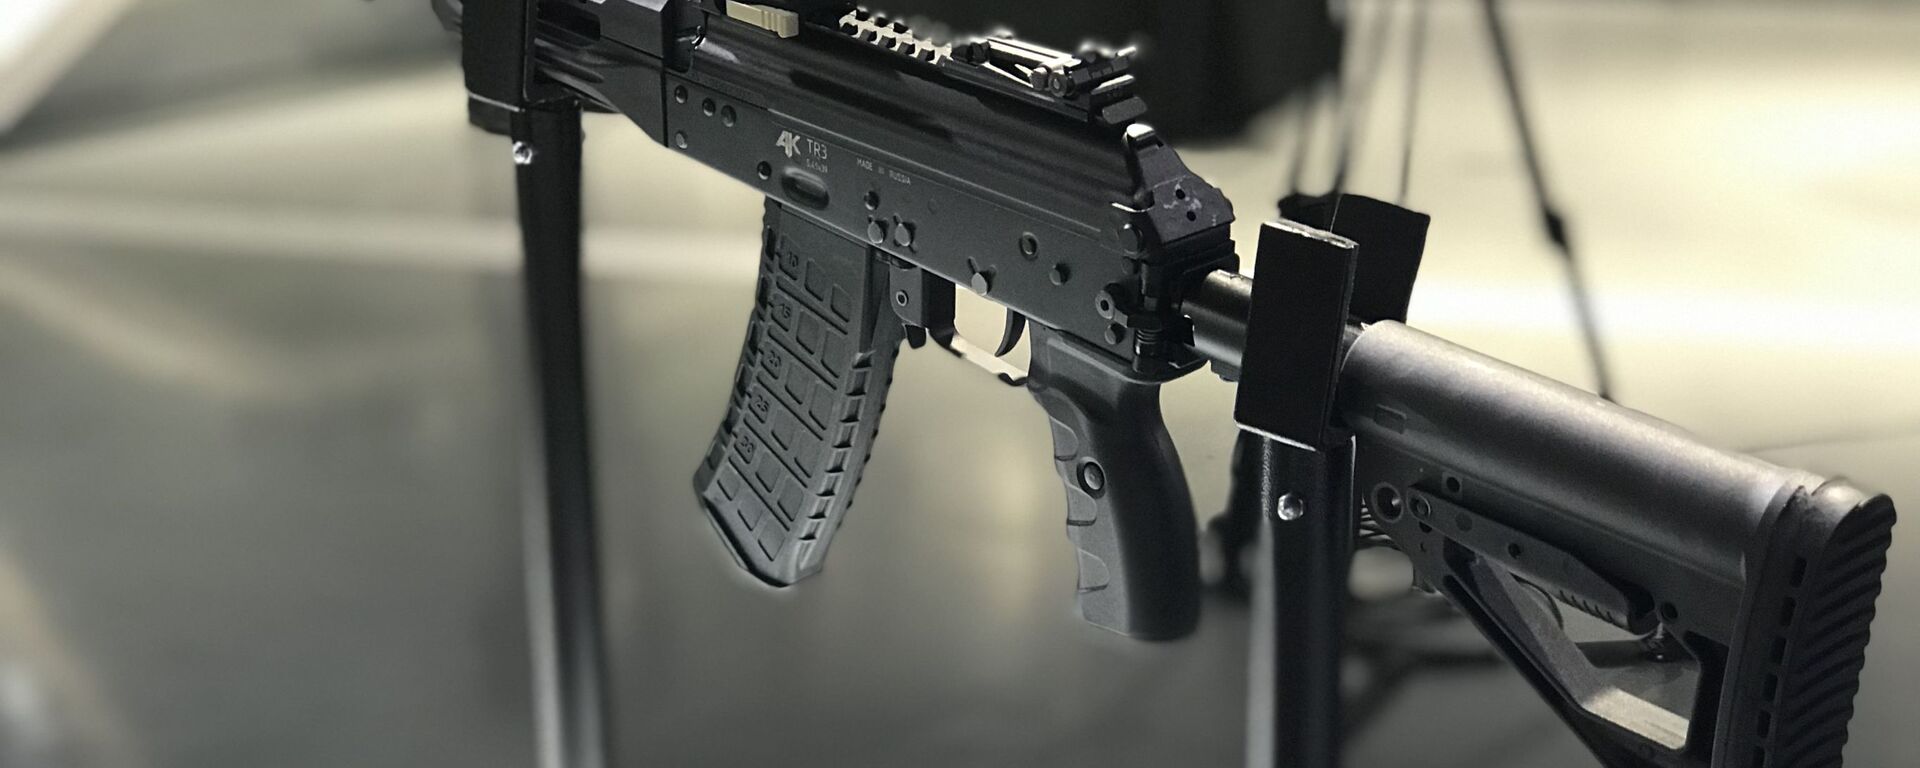 Automatska puška AK TR3, koja predstavlja civilnu verziju automata AK-12 koji koriste jedinice kopnene vojske Oružanih snaga Rusije. - Sputnik Srbija, 1920, 09.09.2021